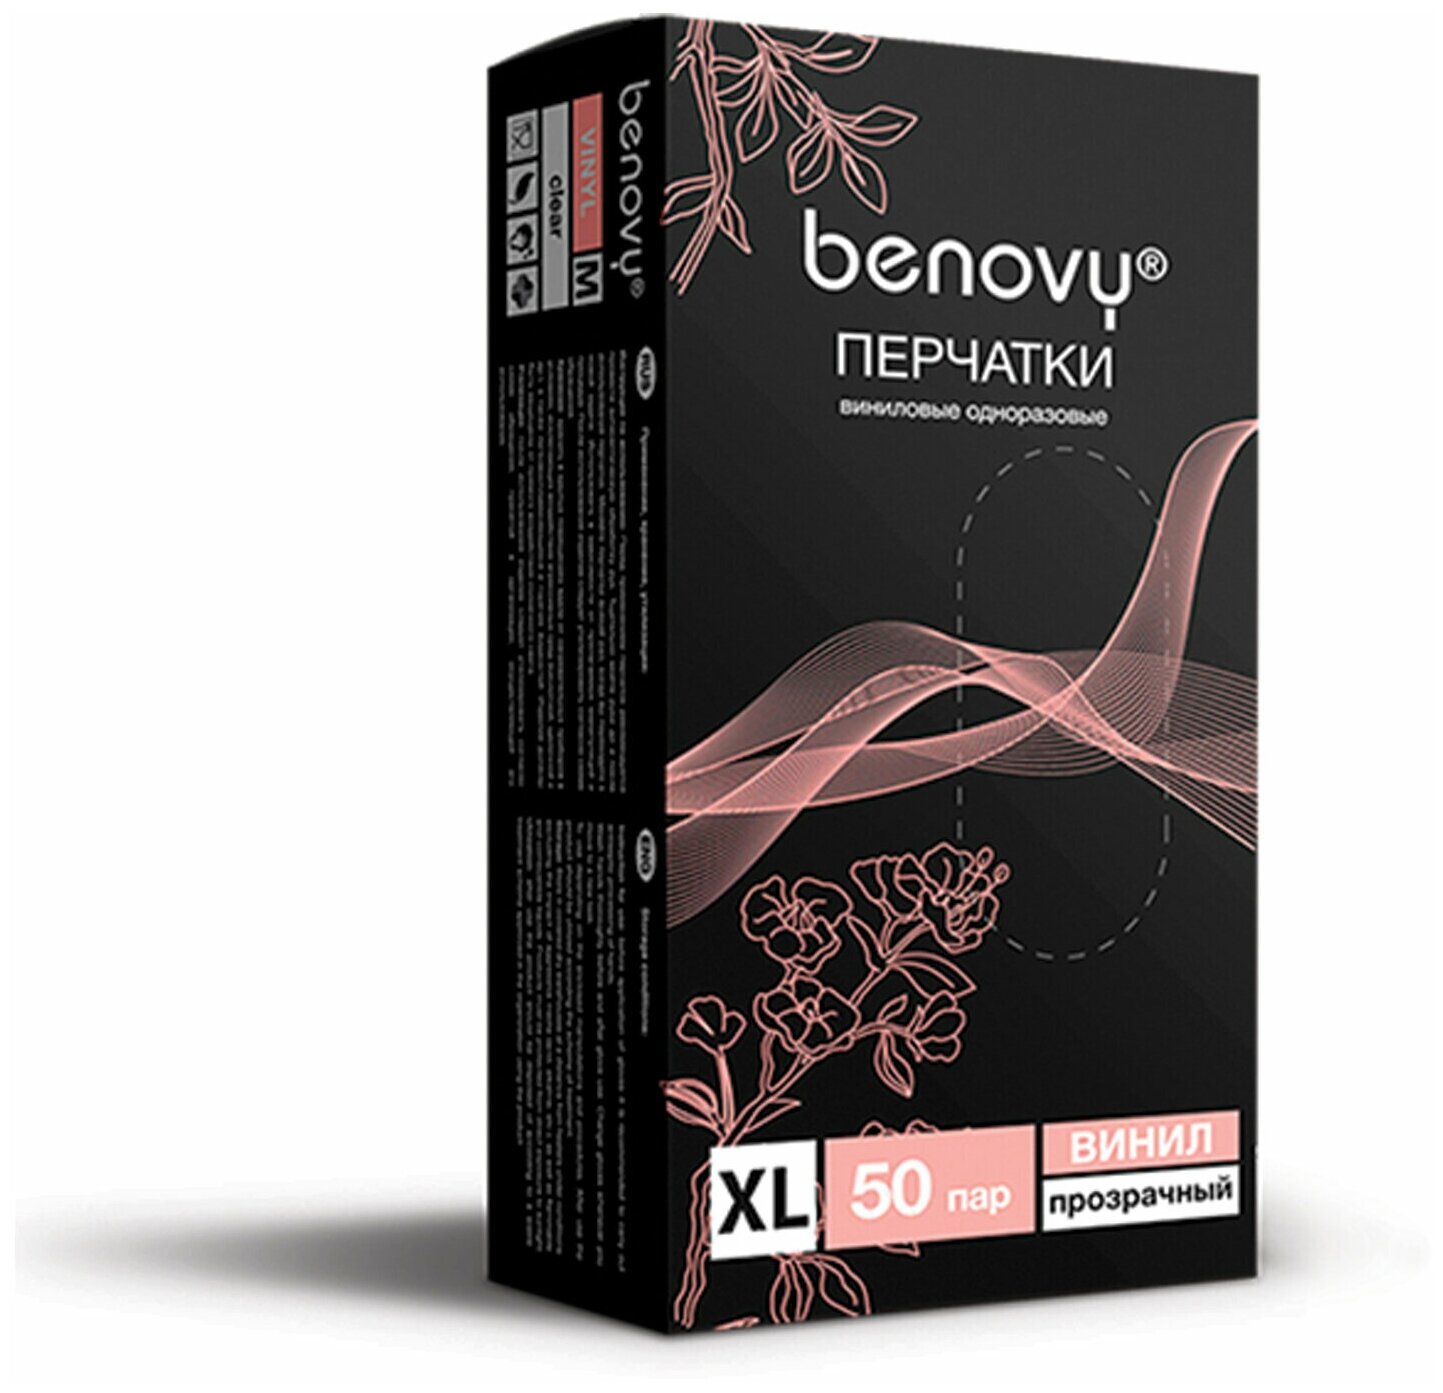 Перчатки Benovy виниловые одноразовые, 50 пар, размер XL, цвет прозрачный - фотография № 8